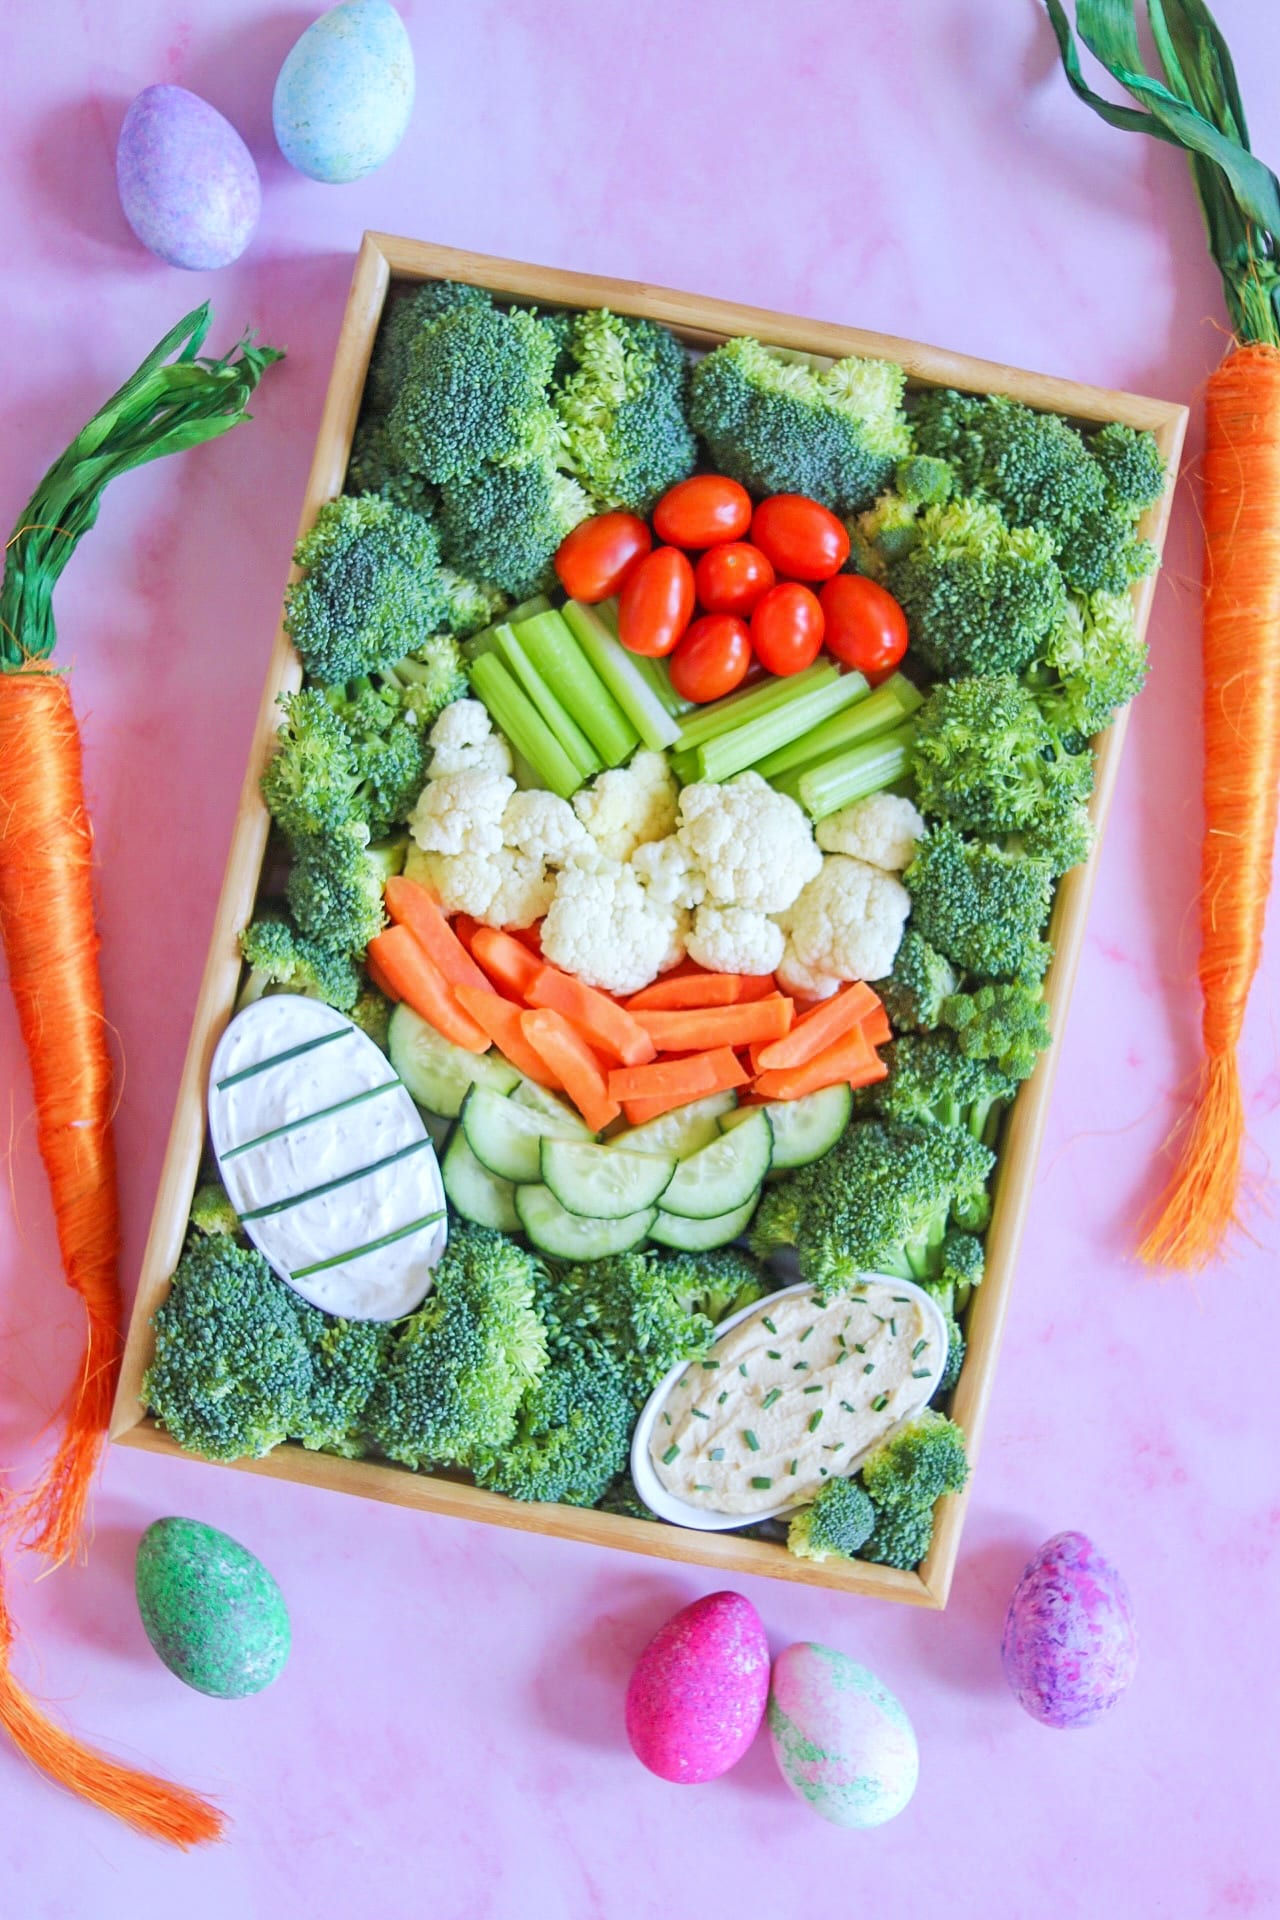 Easter Veggie Tray (Easter themed vegetable platter)